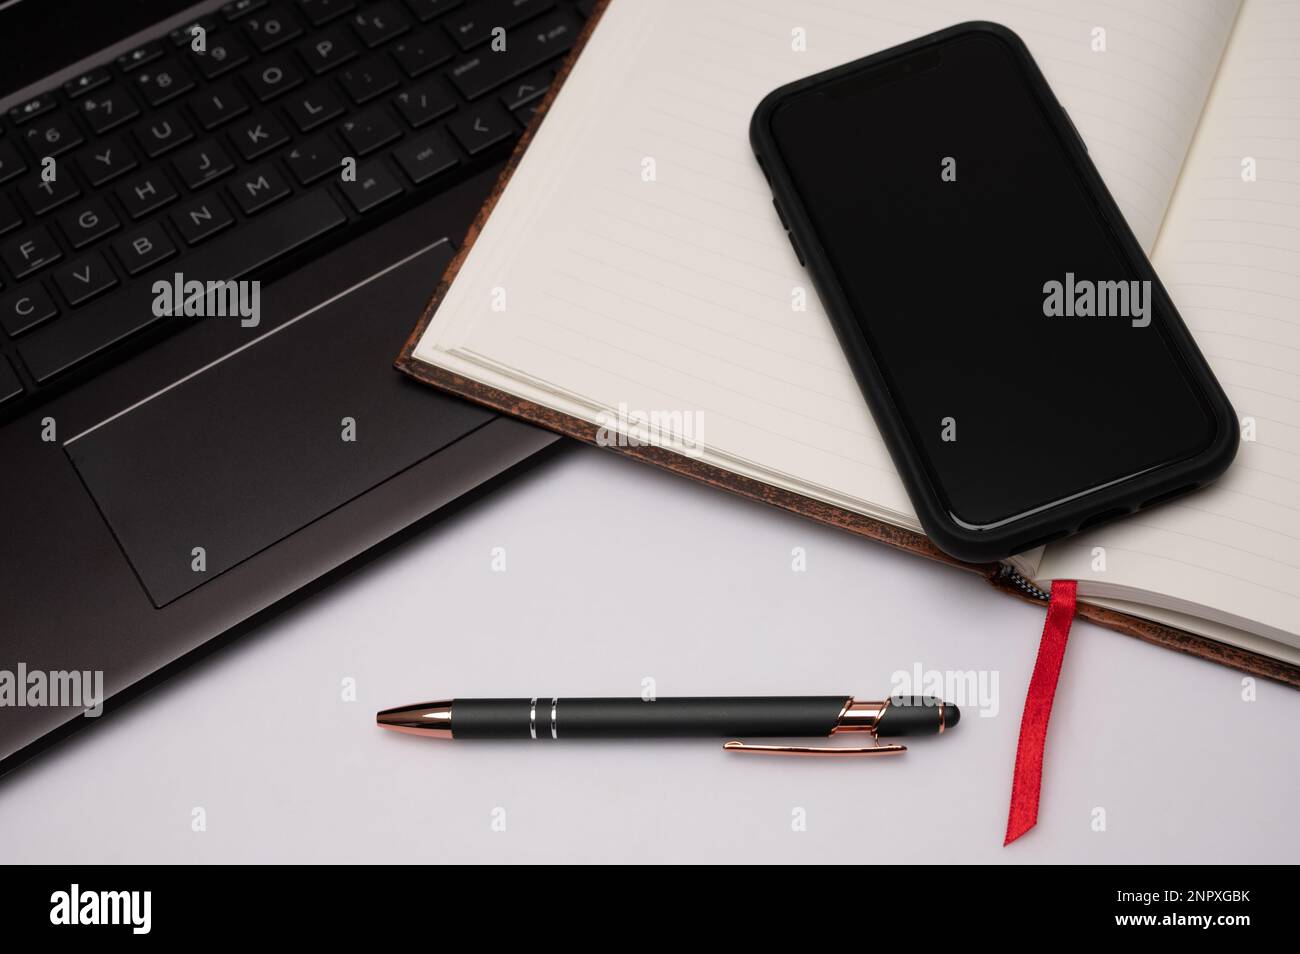 Ein mit Lesezeichen versehenes Notebook, Mobiltelefon, Stift und Laptop auf einem weißen Desktop-PC, das als Vorbereitung auf kreatives Schreiben das Gefühl eines Home Office vermittelt. Stockfoto